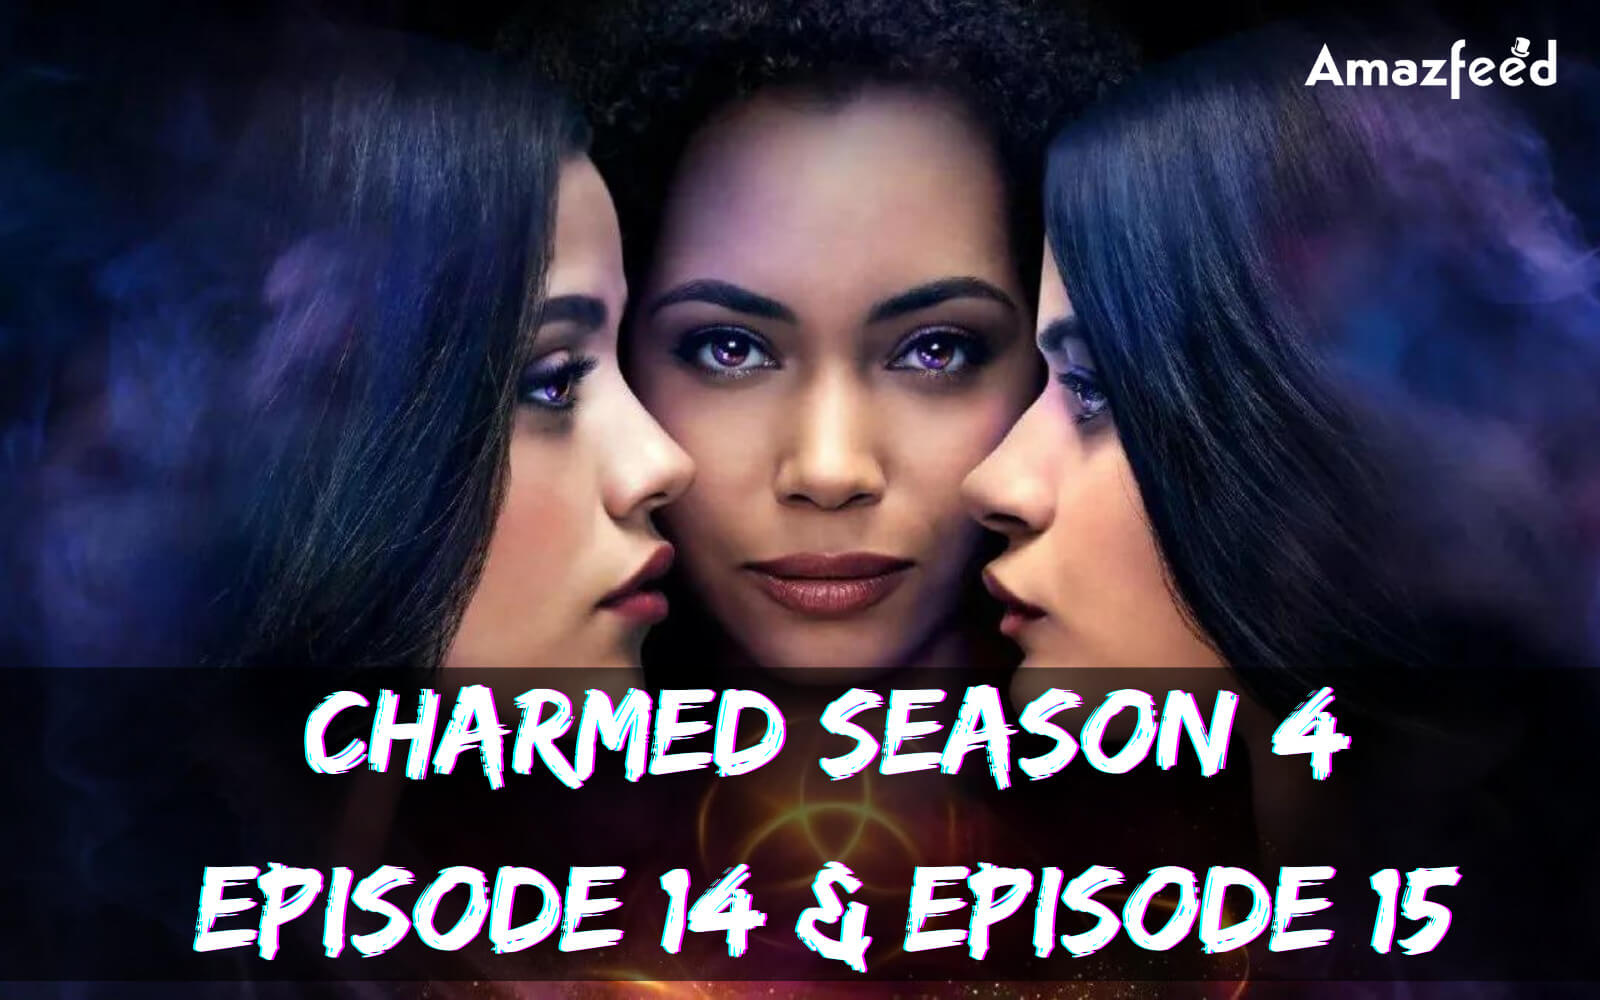 Charmed Season 4 Episode 14 release date